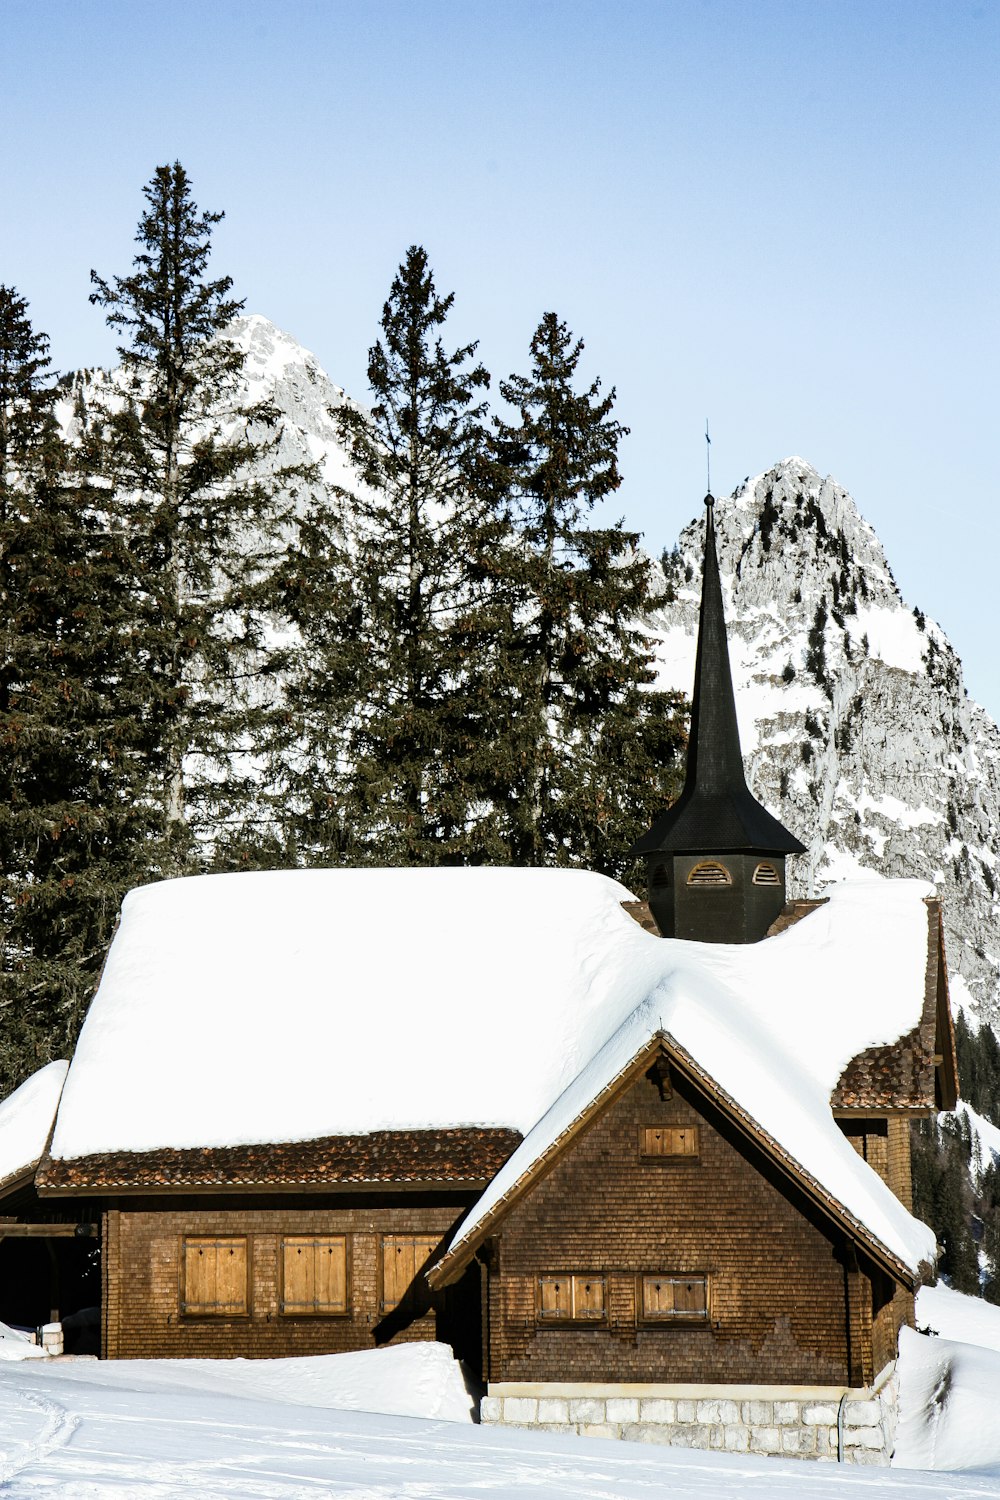 Casa cubierta de nieve blanca y pino bajo el cielo azul